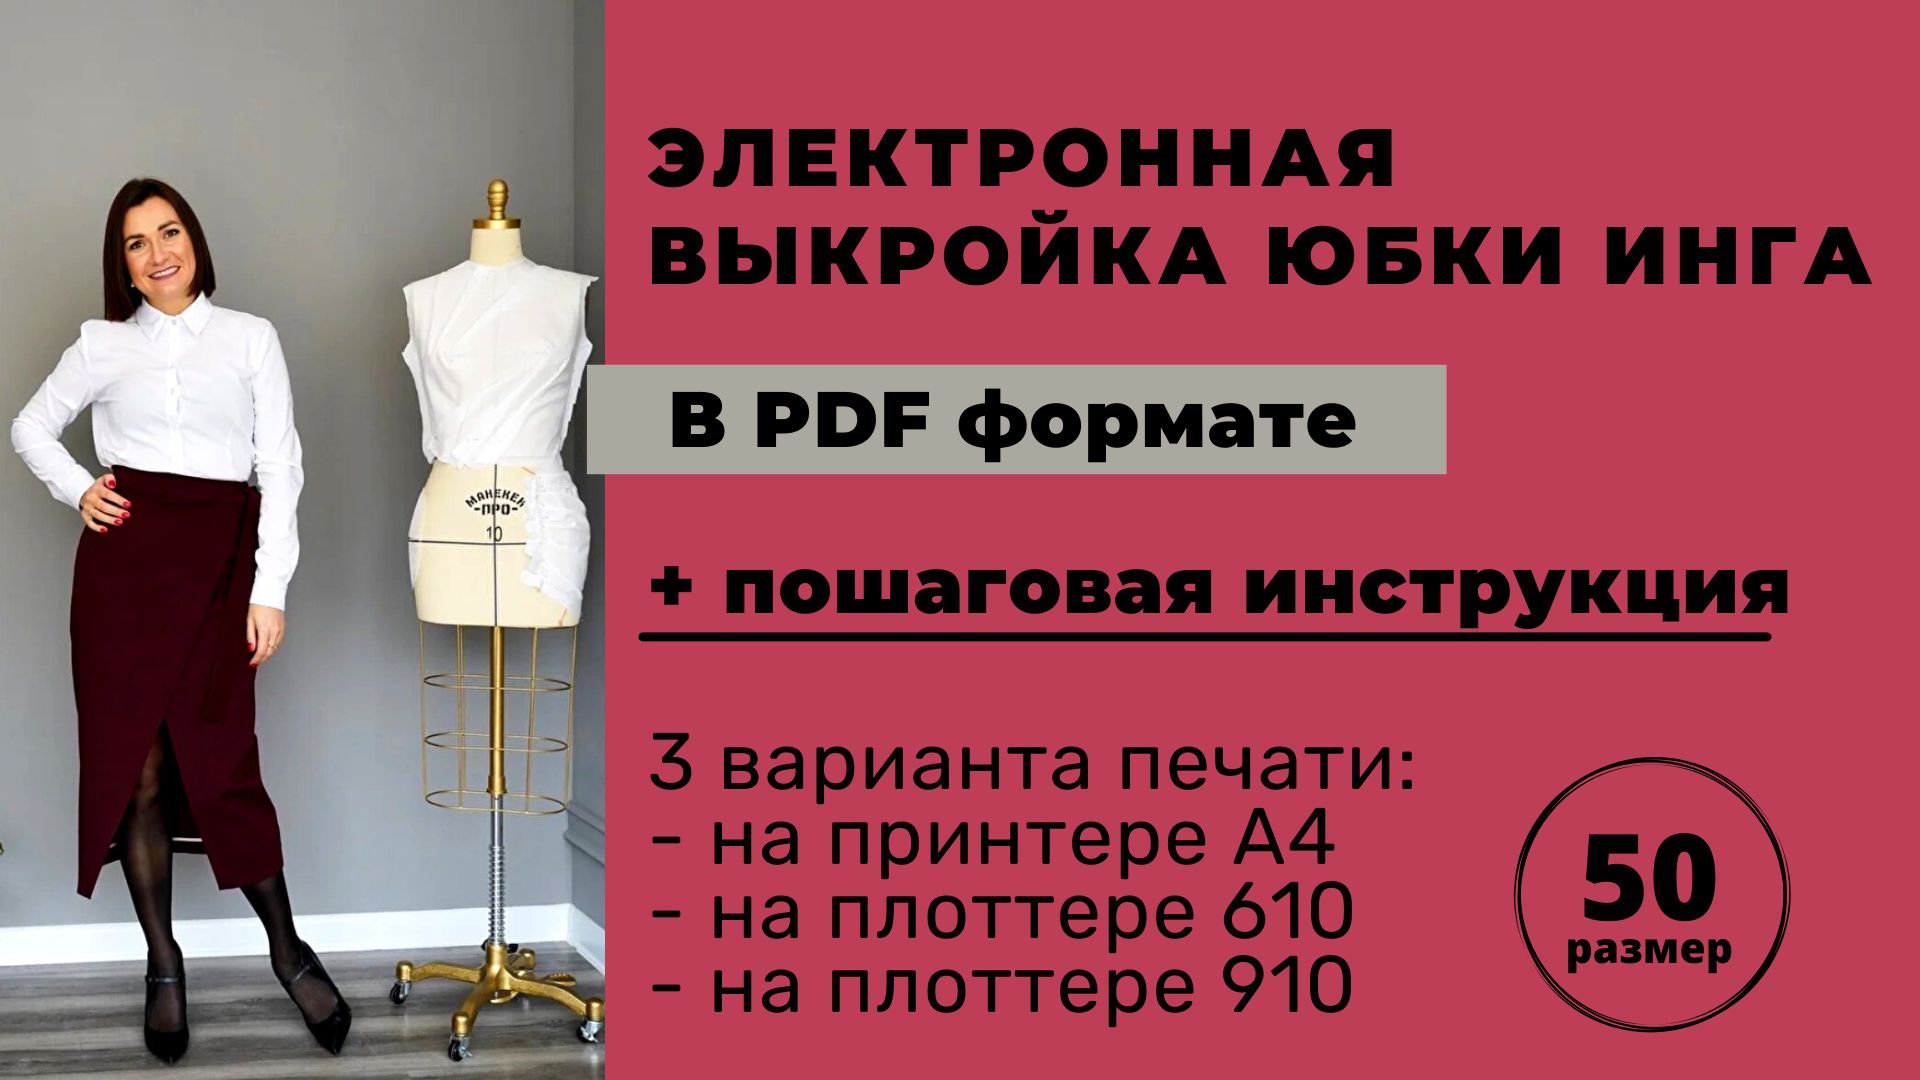 Электронная выкройка юбки Инга размер 50 в формате pdf для печати А4 / плоттер 610 / плоттер 910